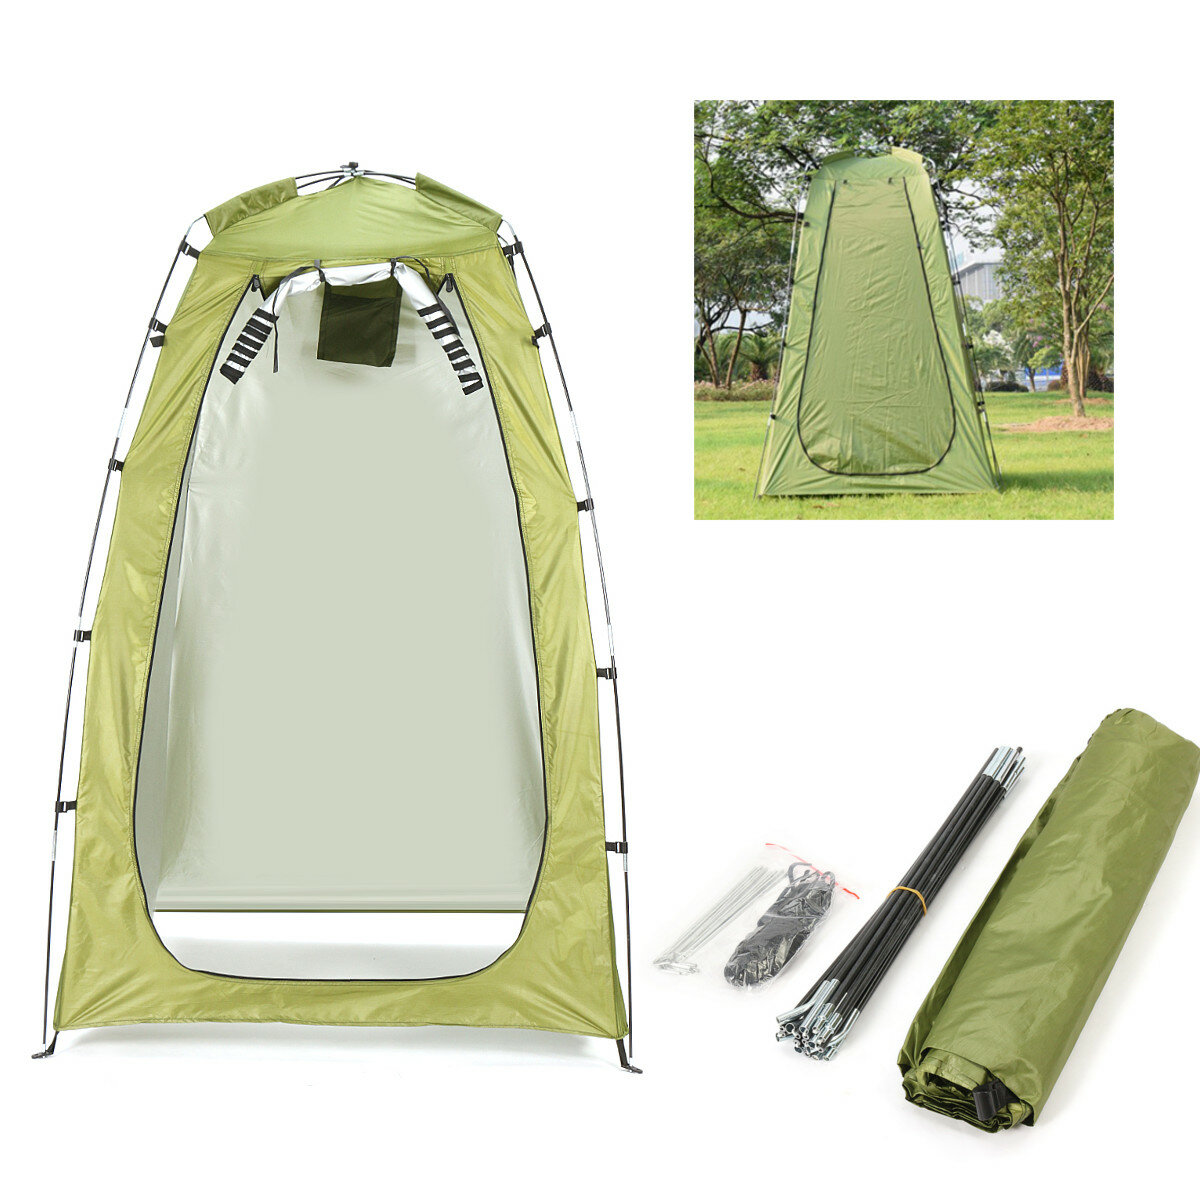 Tente individuelle avec douche extérieure et toilettes pour le camping sur la plage, protégée contre l'eau.